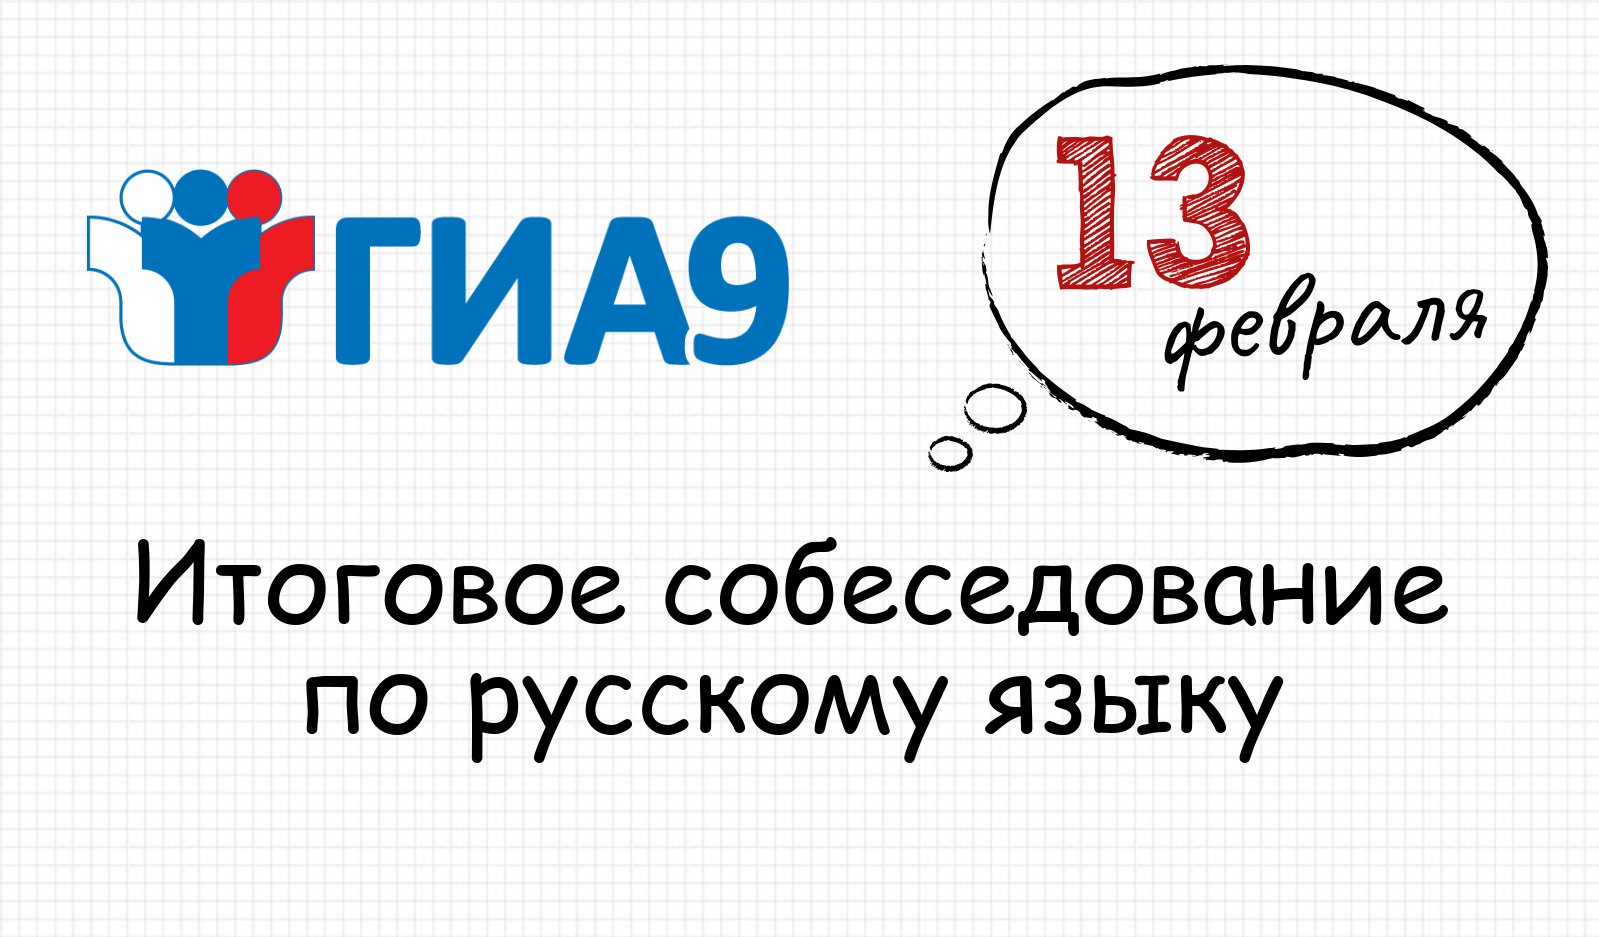 Рособрнадзор сообщает о сроках подачи заявлений девятиклассниками на участие в итоговом собеседовании по русскому языку